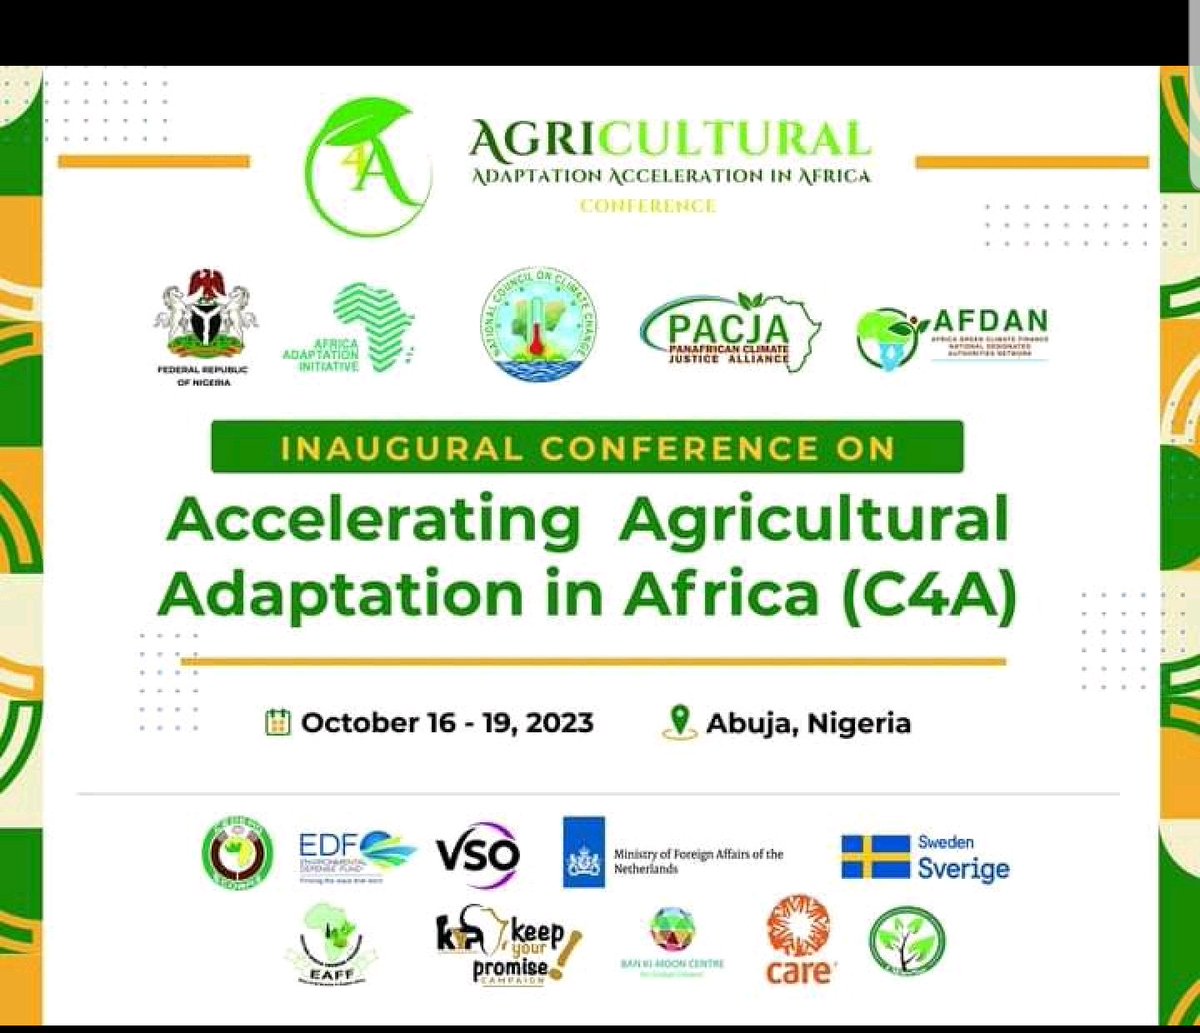 1ère conférence sur l'adaptation agricole en Afrique. Vous pouvez également nous suivre en ligne.
#KeepYourPromises
#C4A
#AACJ #Agriculture4Resilience 
#YAF #COP28